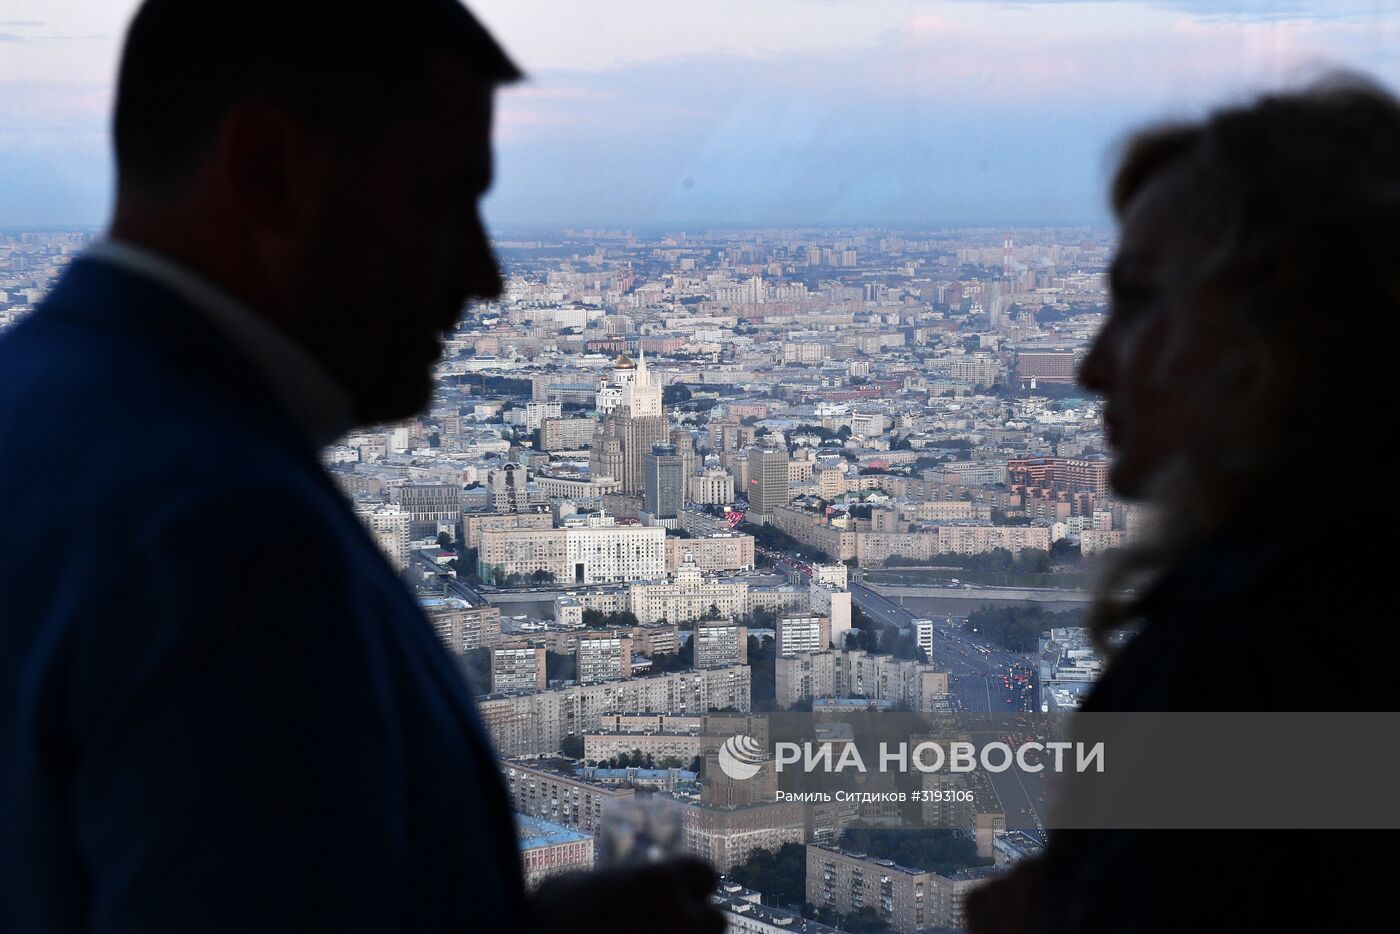 Самая высокая смотровая площадка Европы готовится к открытию в Москве